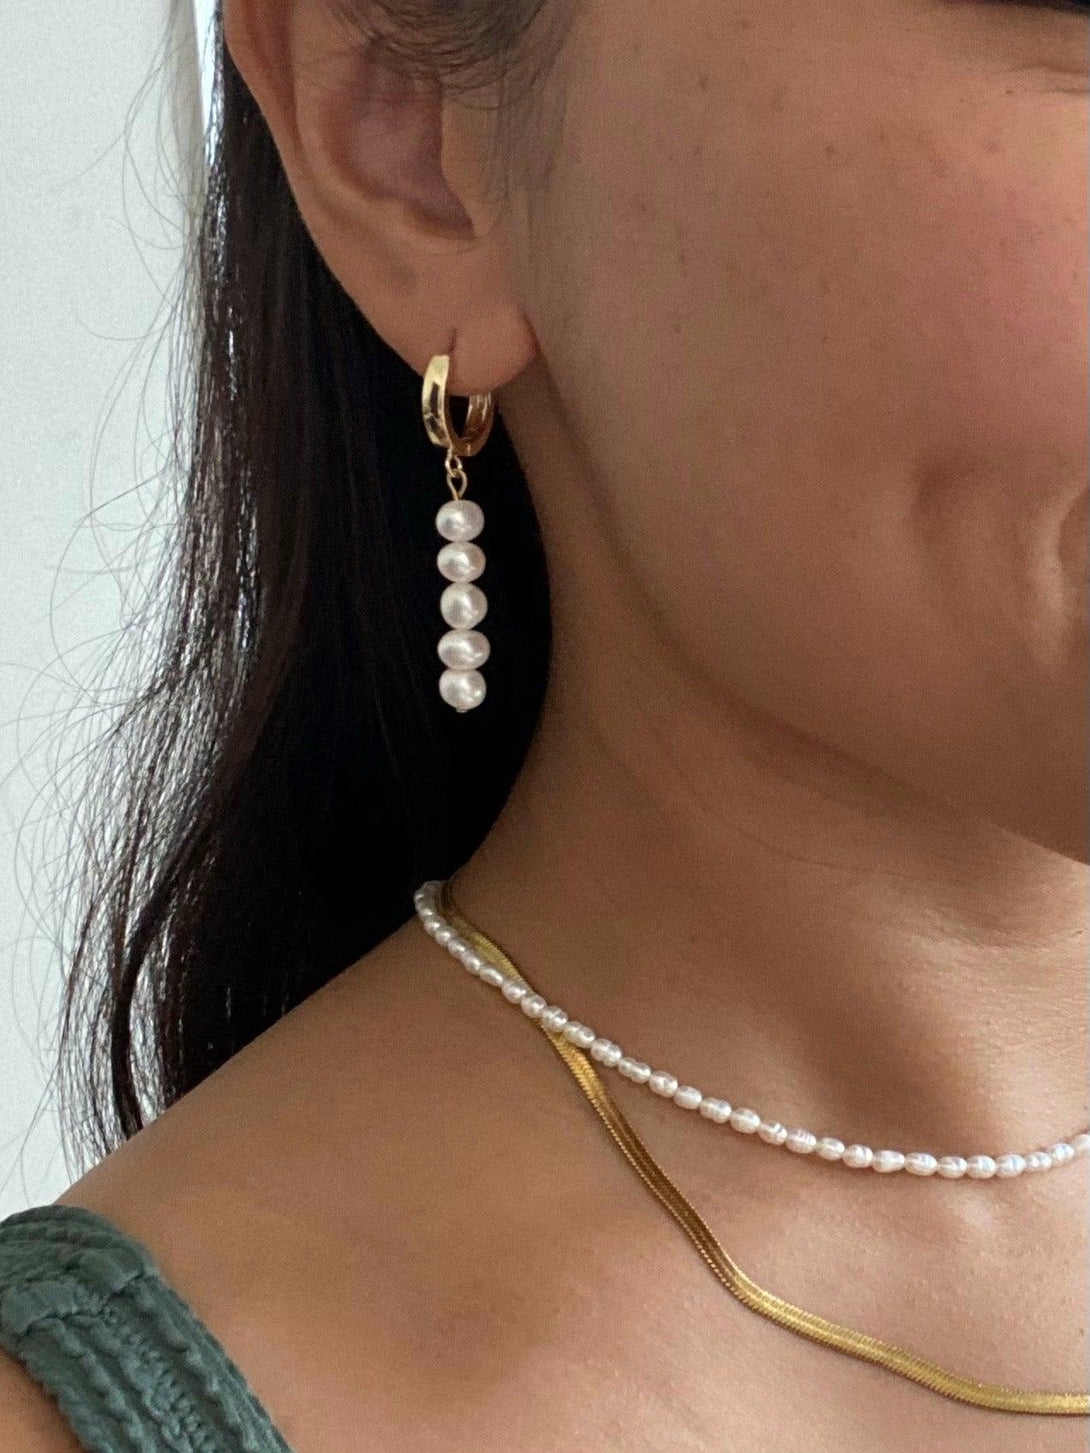 Tala 14k Gold Hoop Earrings with Freshwater Pearls - Pink N' Proper